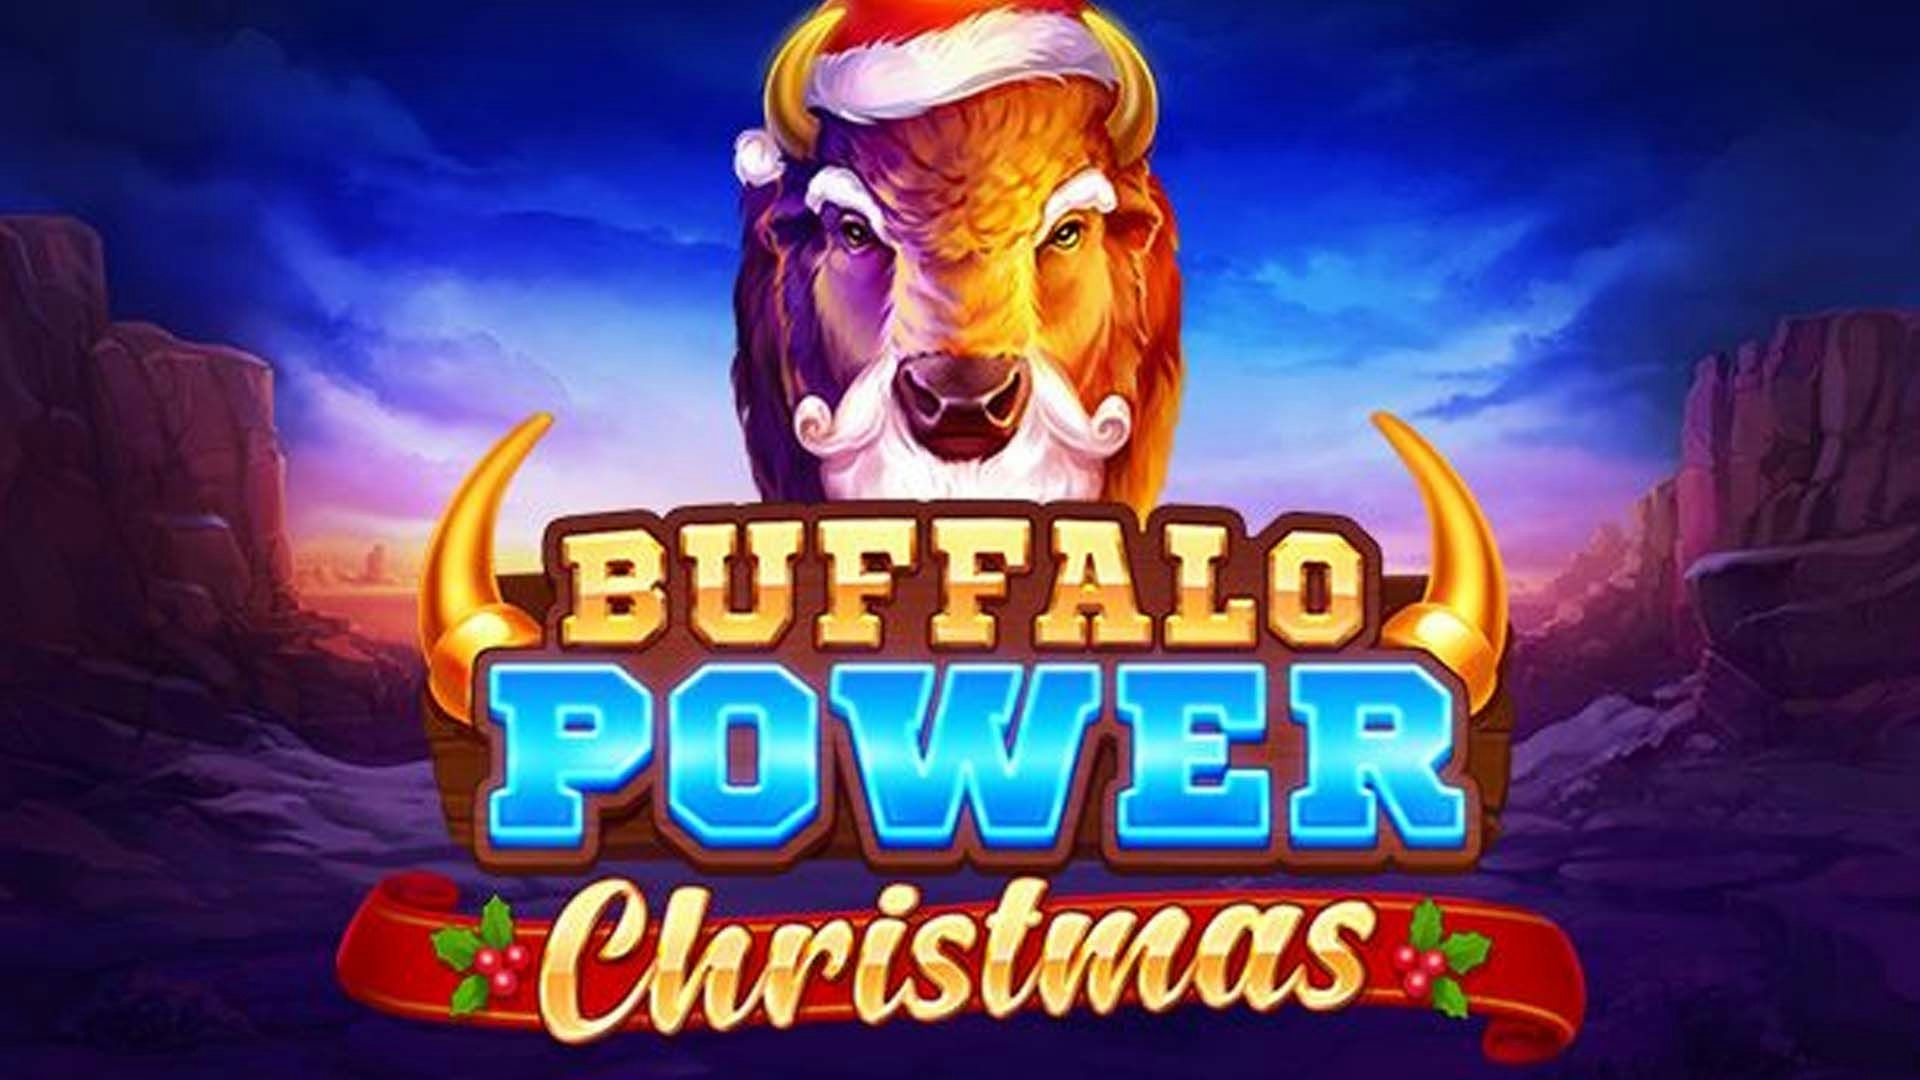 Buffalo Power Christmas